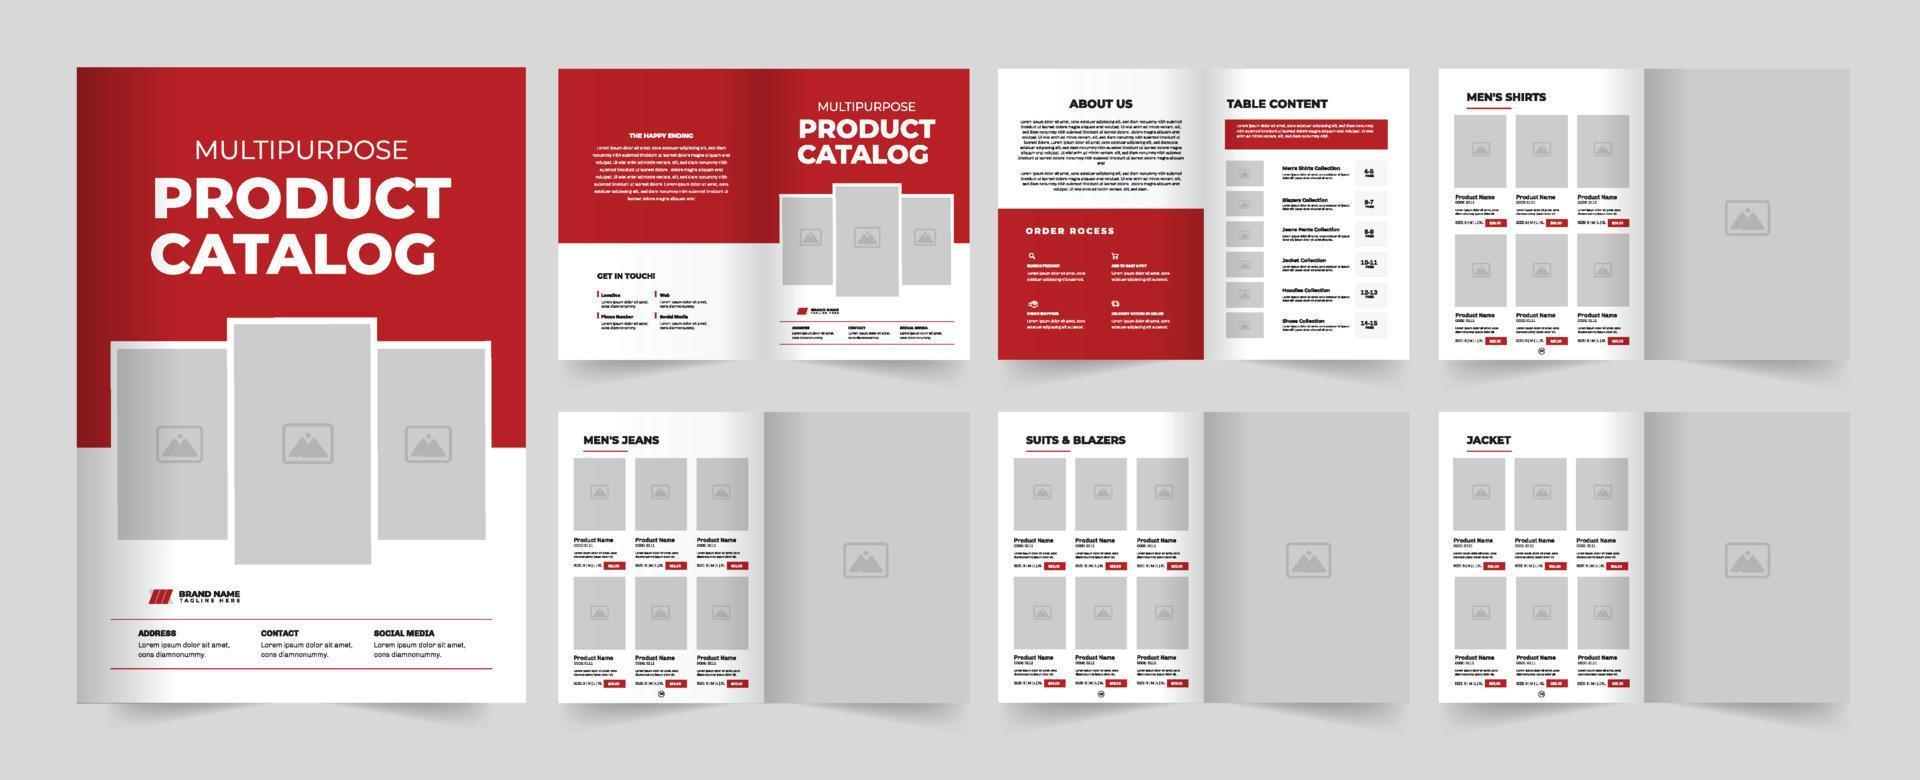 Multipurpose product catalog design. vector